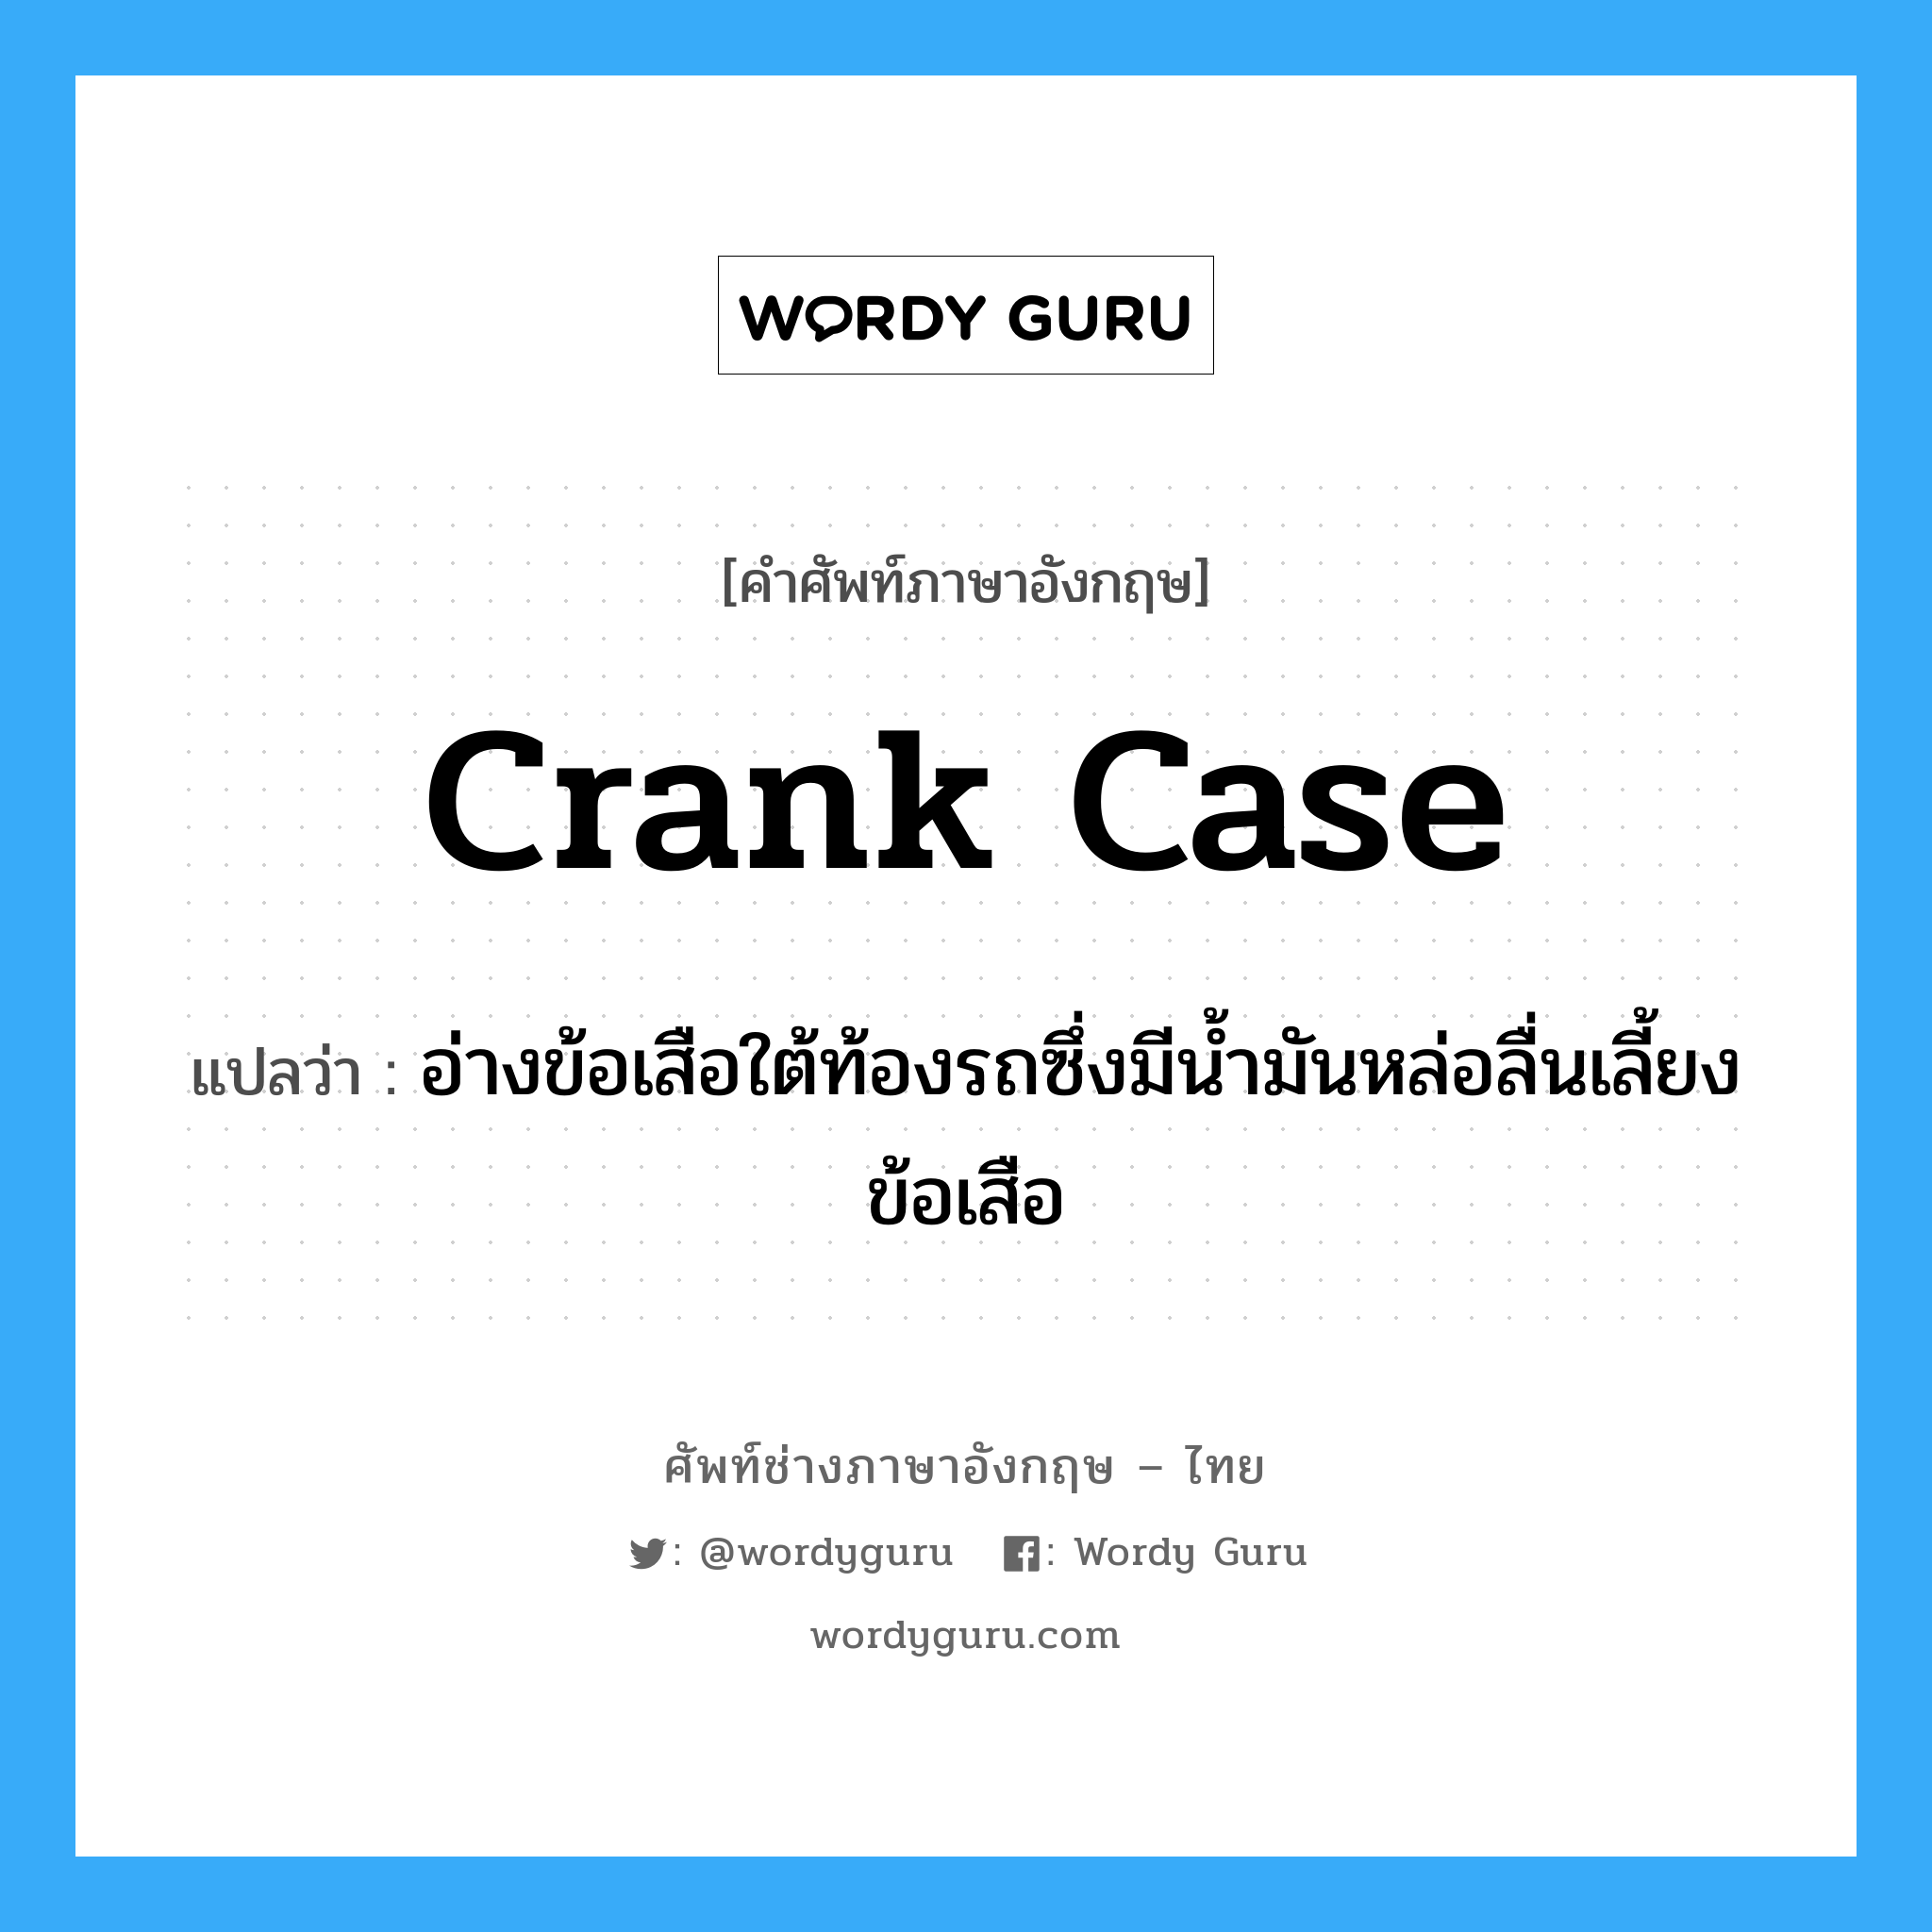 crank case แปลว่า?, คำศัพท์ช่างภาษาอังกฤษ - ไทย crank case คำศัพท์ภาษาอังกฤษ crank case แปลว่า อ่างข้อเสือใต้ท้องรถซึ่งมีน้ำมันหล่อลื่นเลี้ยงข้อเสือ